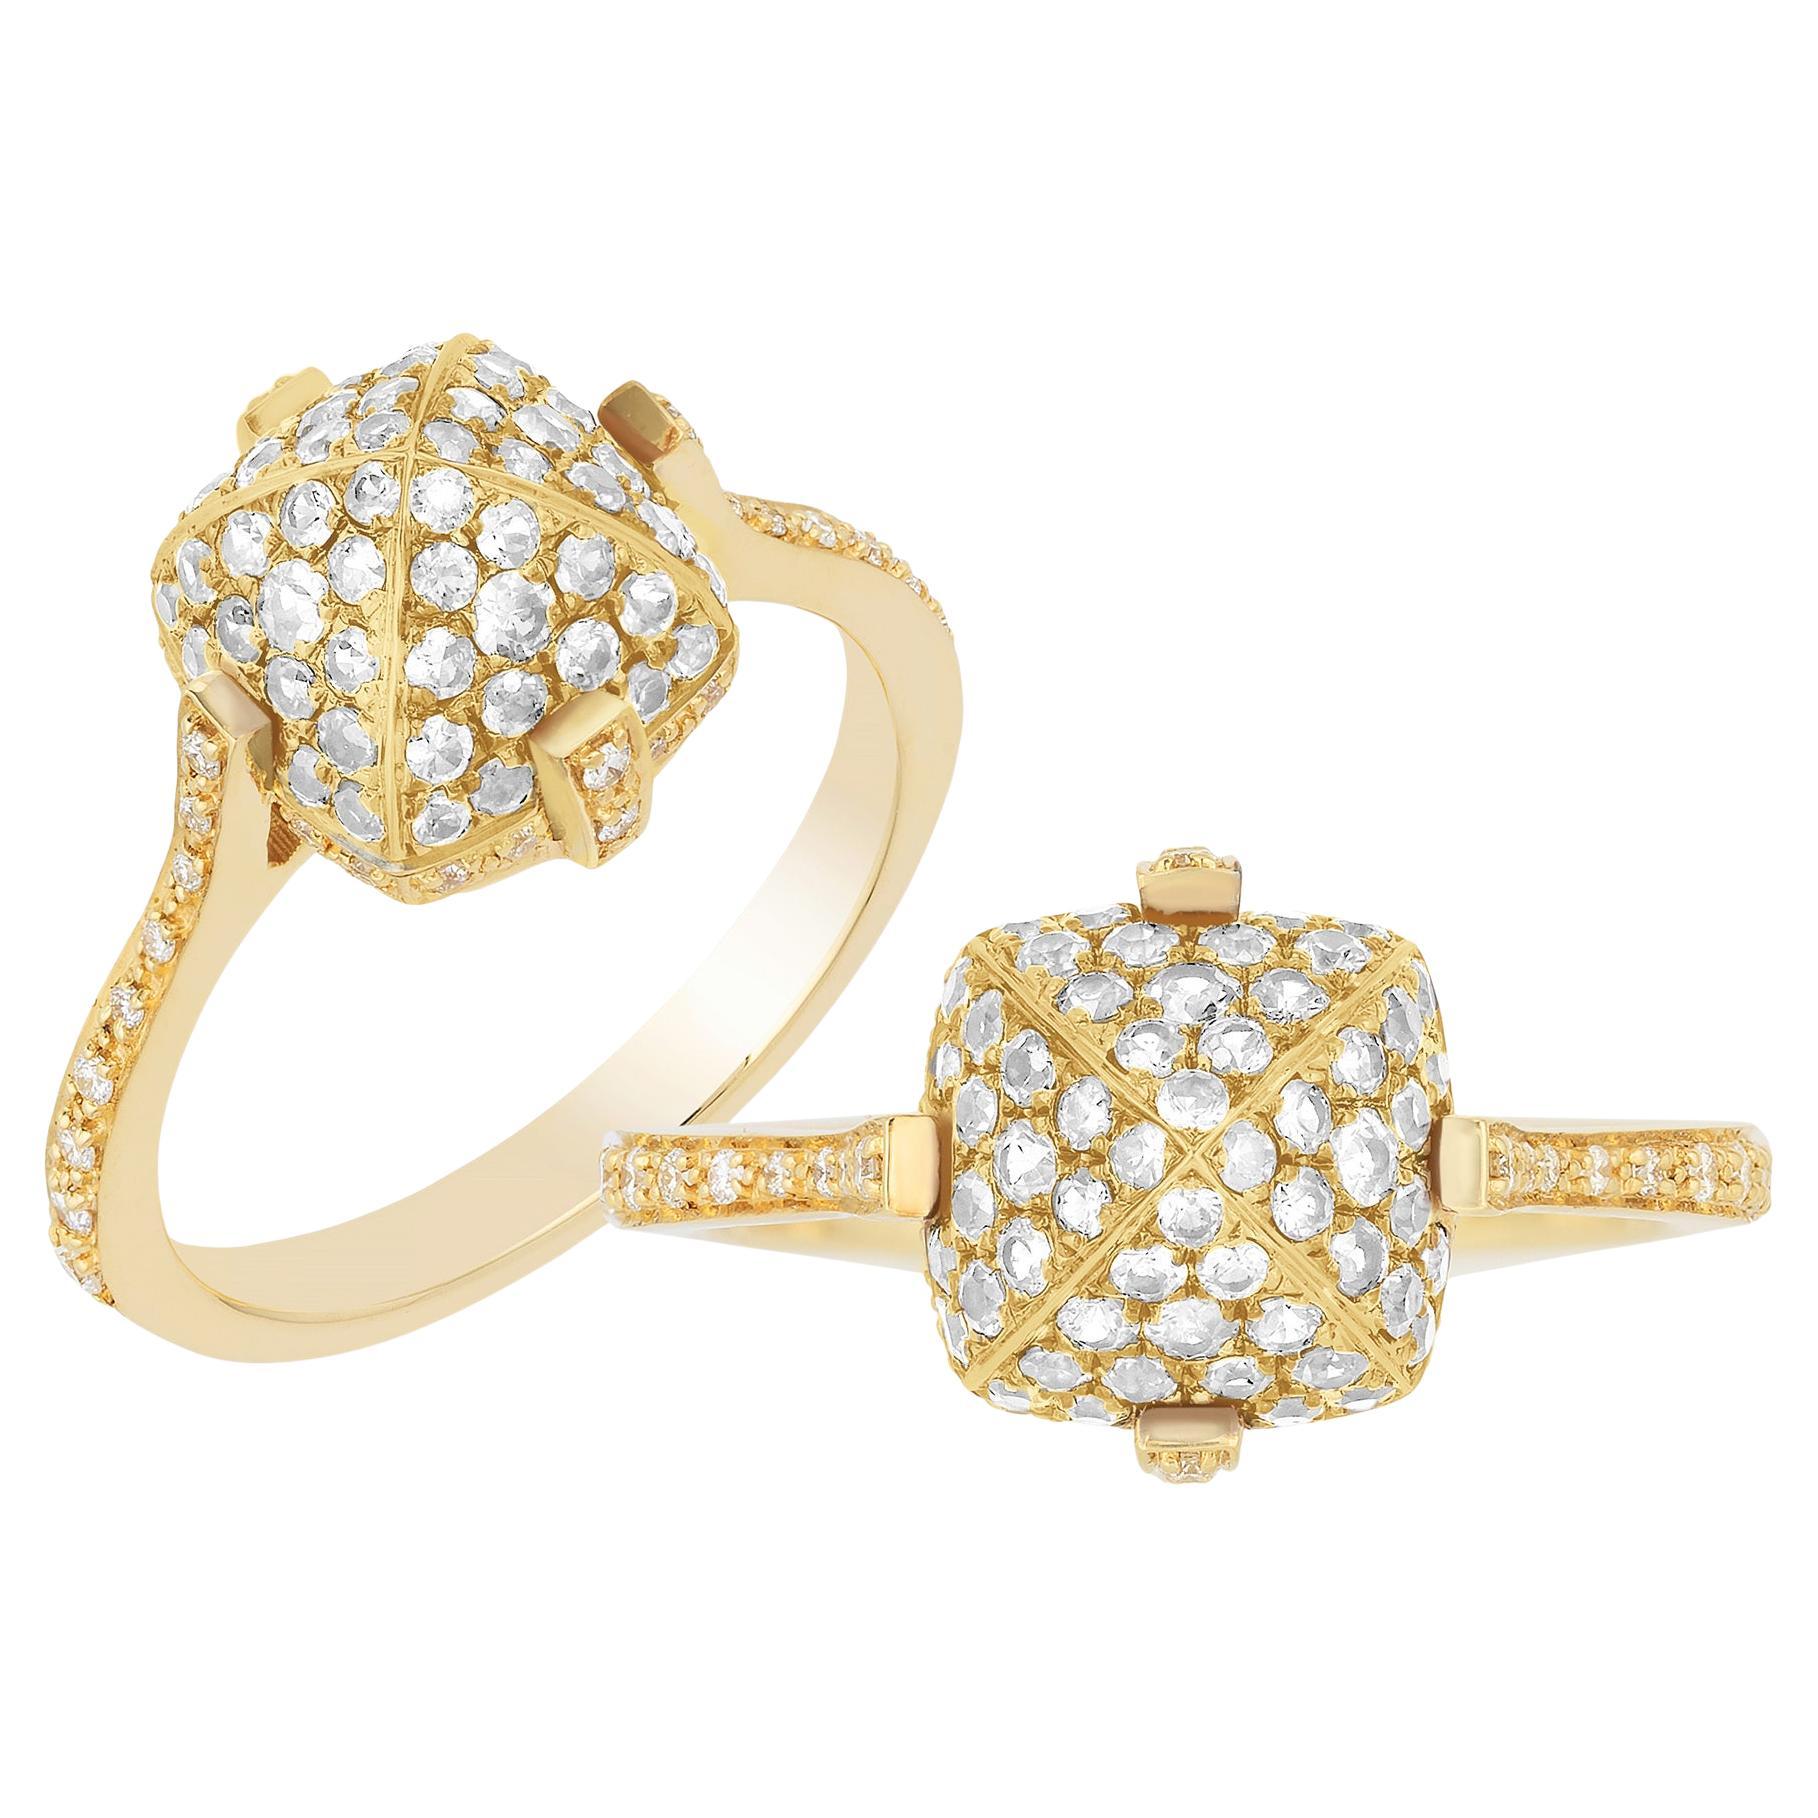 Goshwara Diamond & Gold Ring